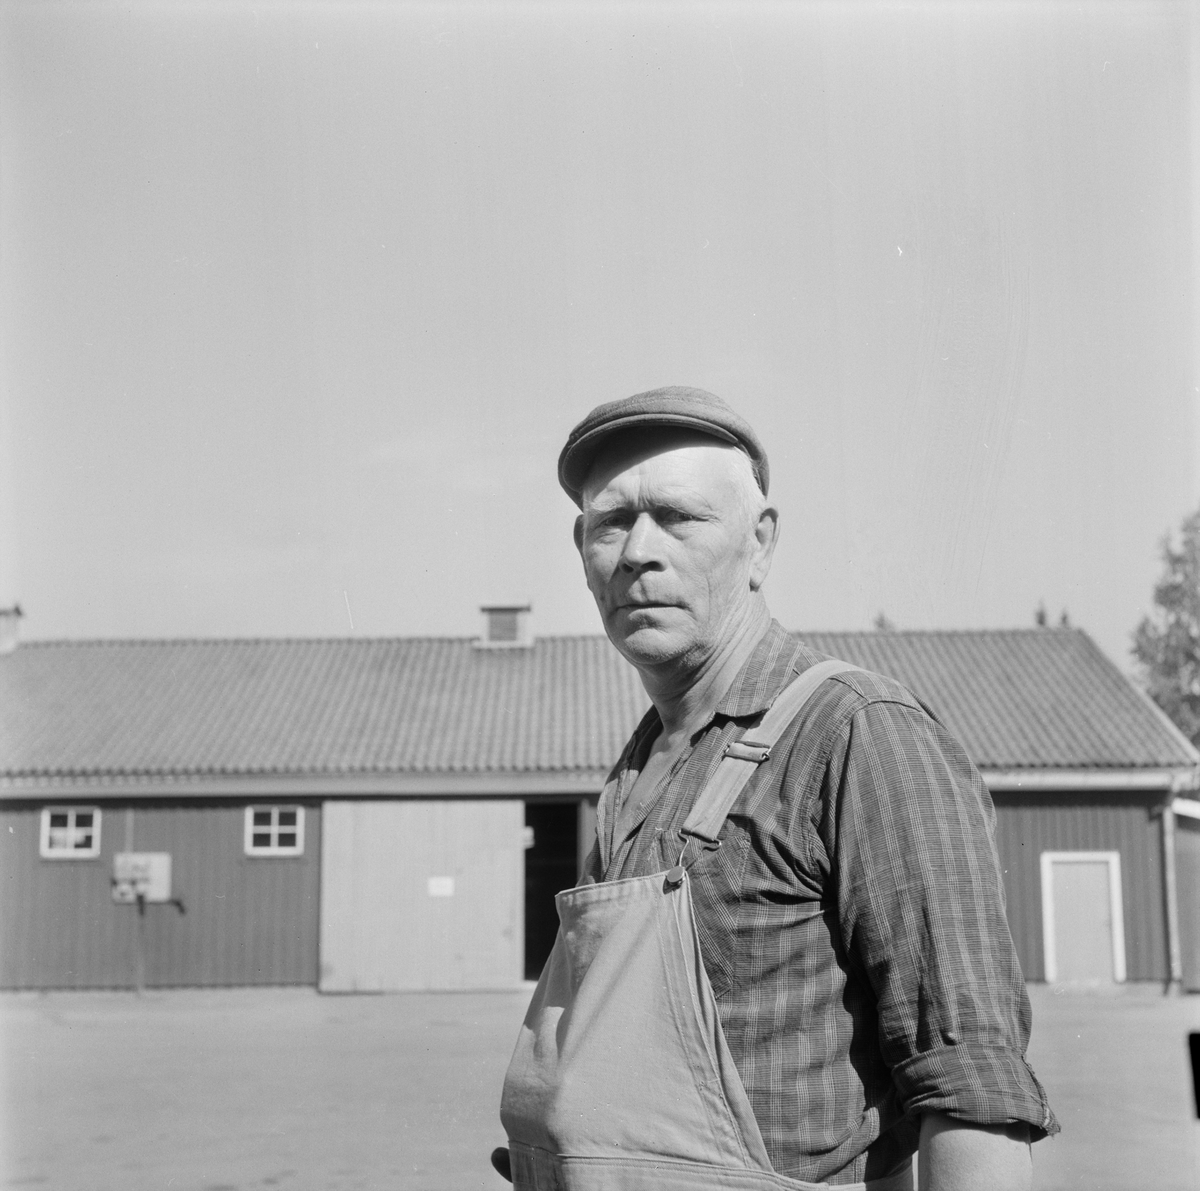 Skärplingebon Alvar Jansson pensioneras, Österlövsta socken, Uppland, juli 1971